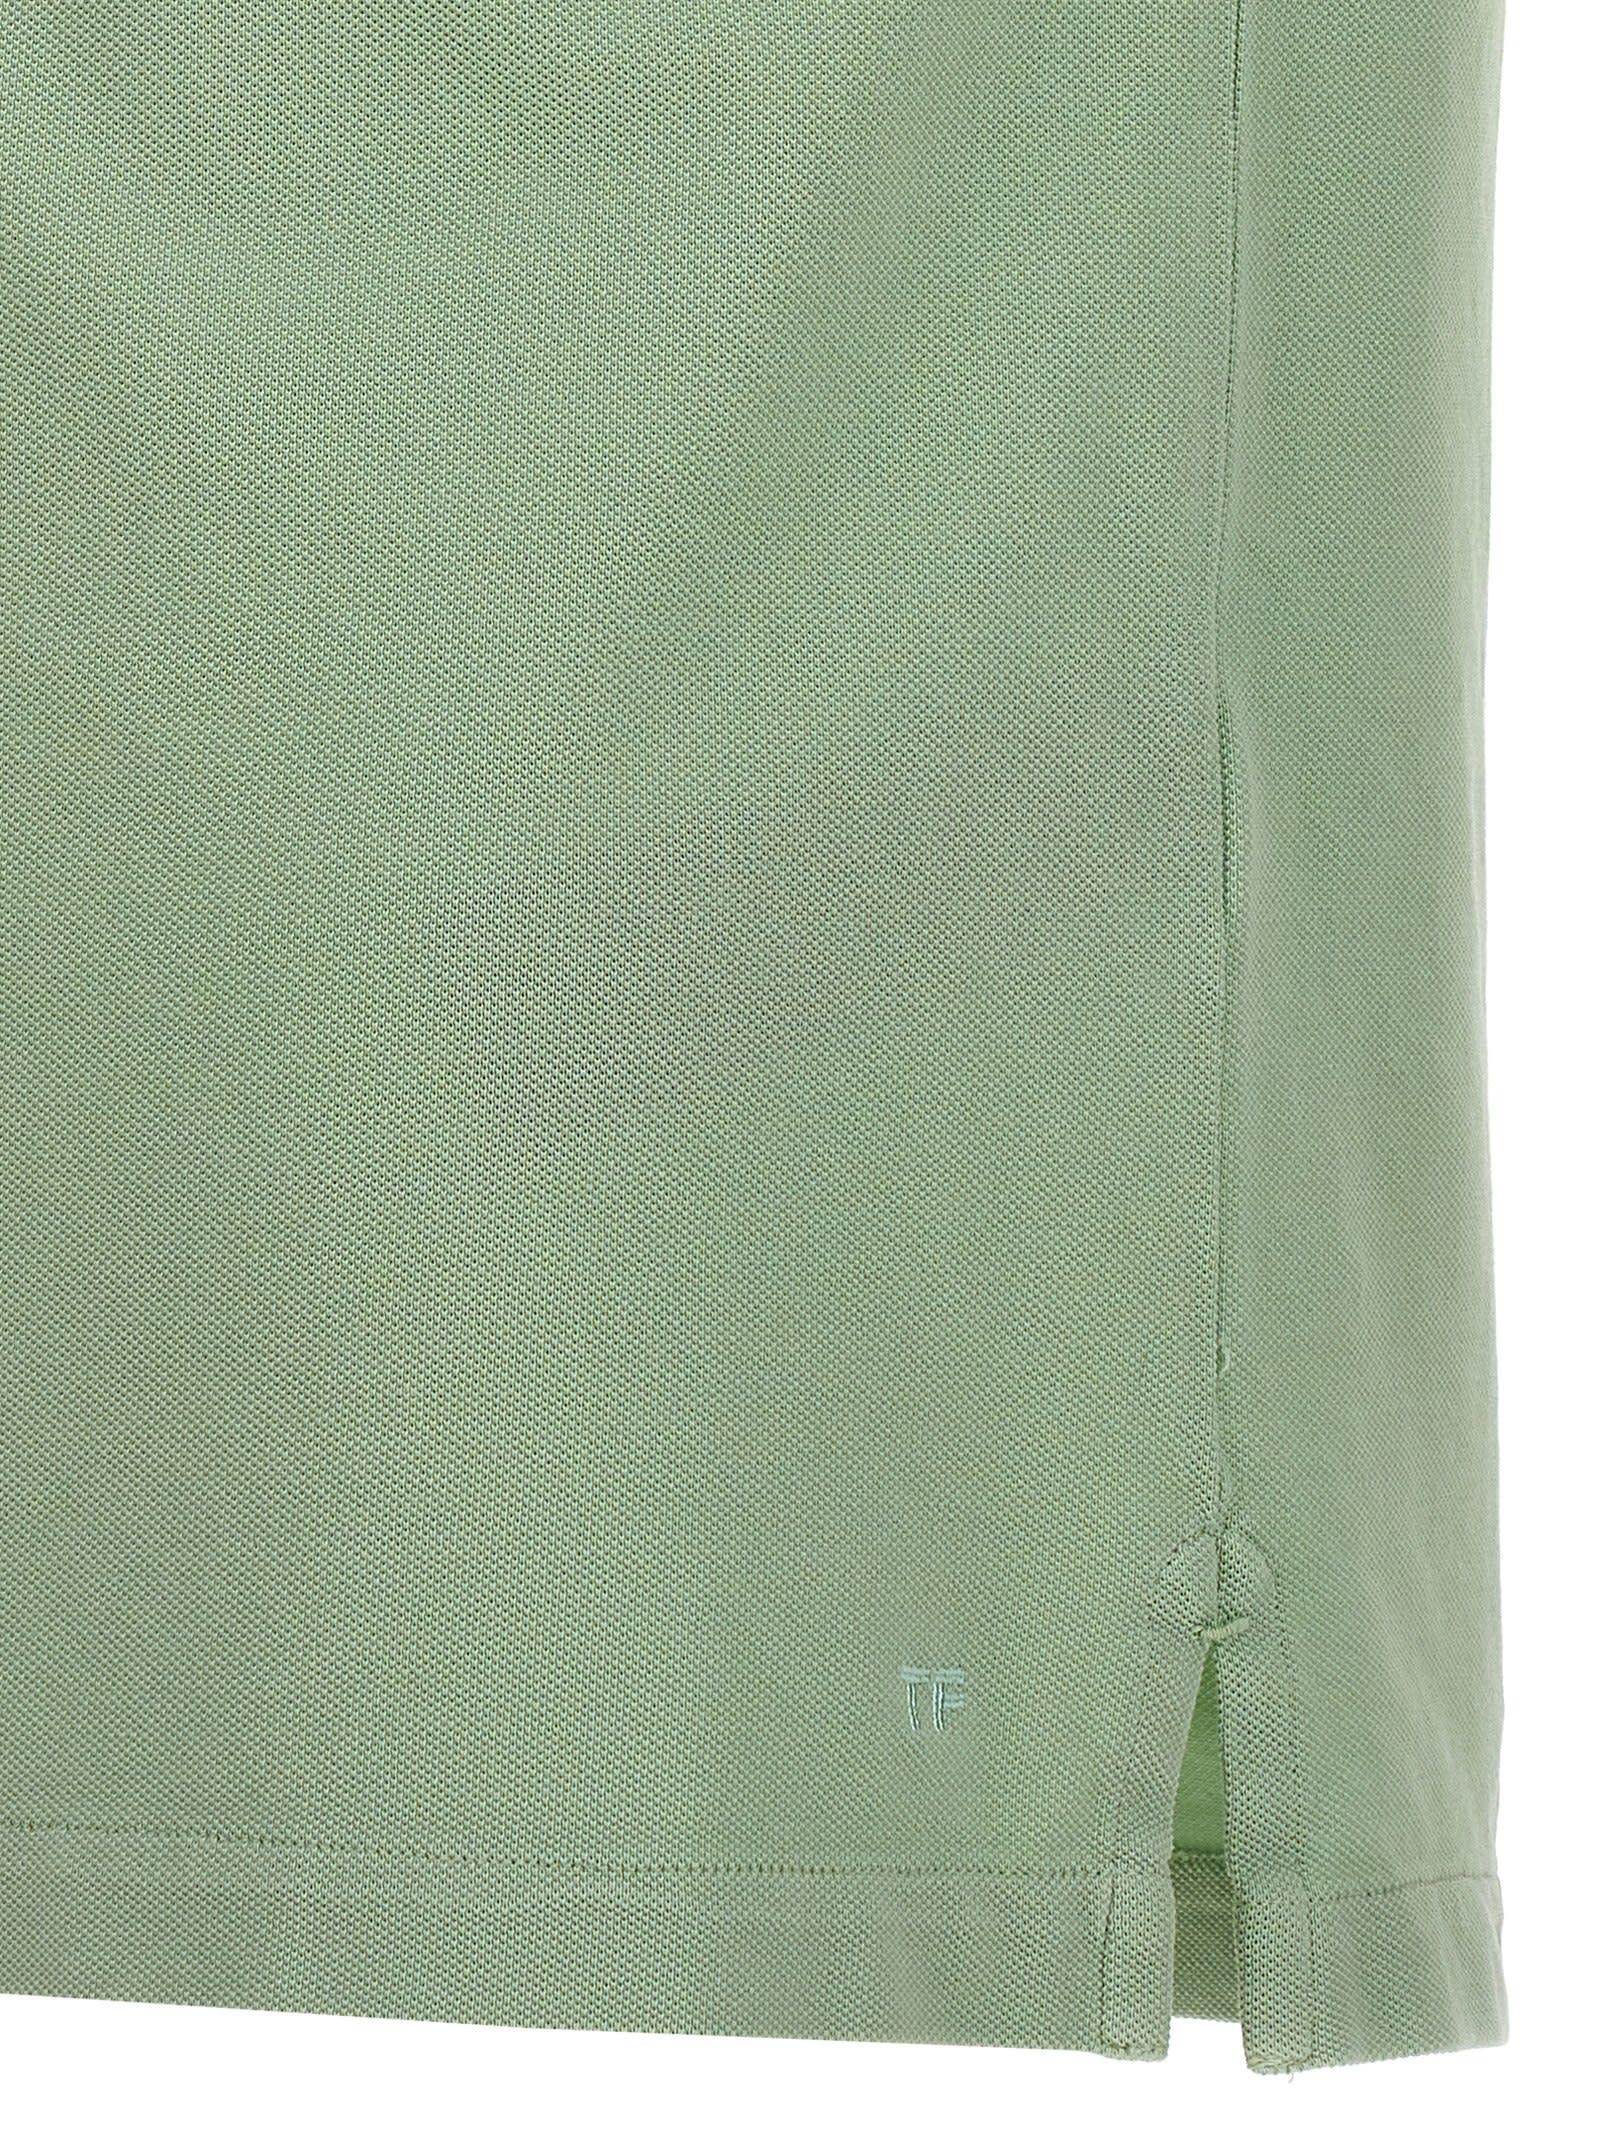 Shop Tom Ford Tennis Piquet Polo Shirt In Green